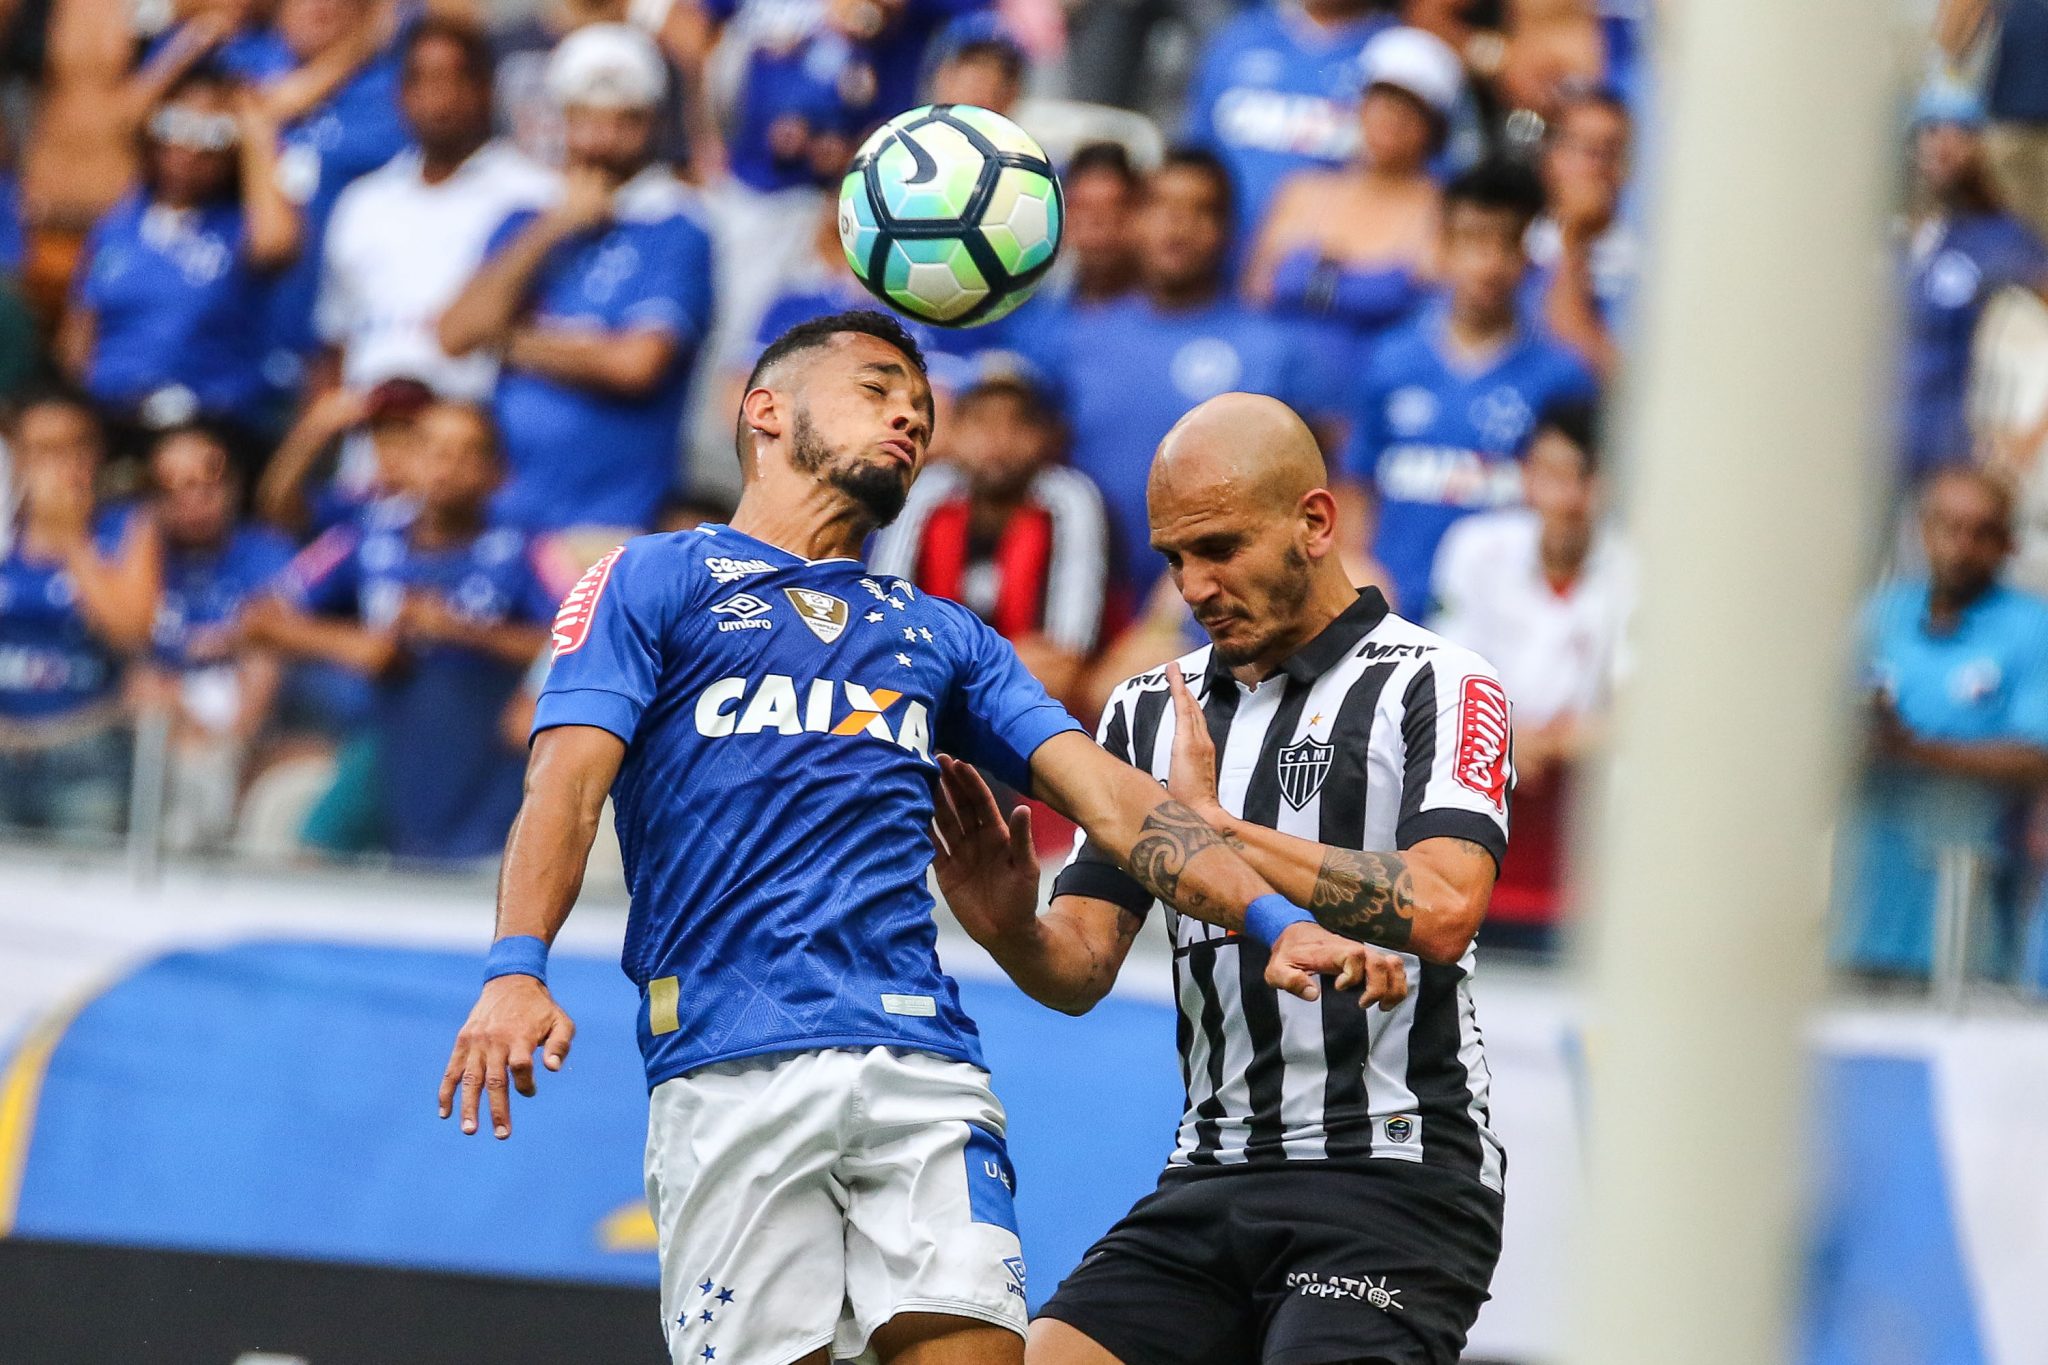 37606570240 ea90b5b7fa o - Cruzeiro 1 x 3 Atlético - Após primeiro tempo ruim, Galo vira no Mineirão e volta a sonhar com a Libertadores